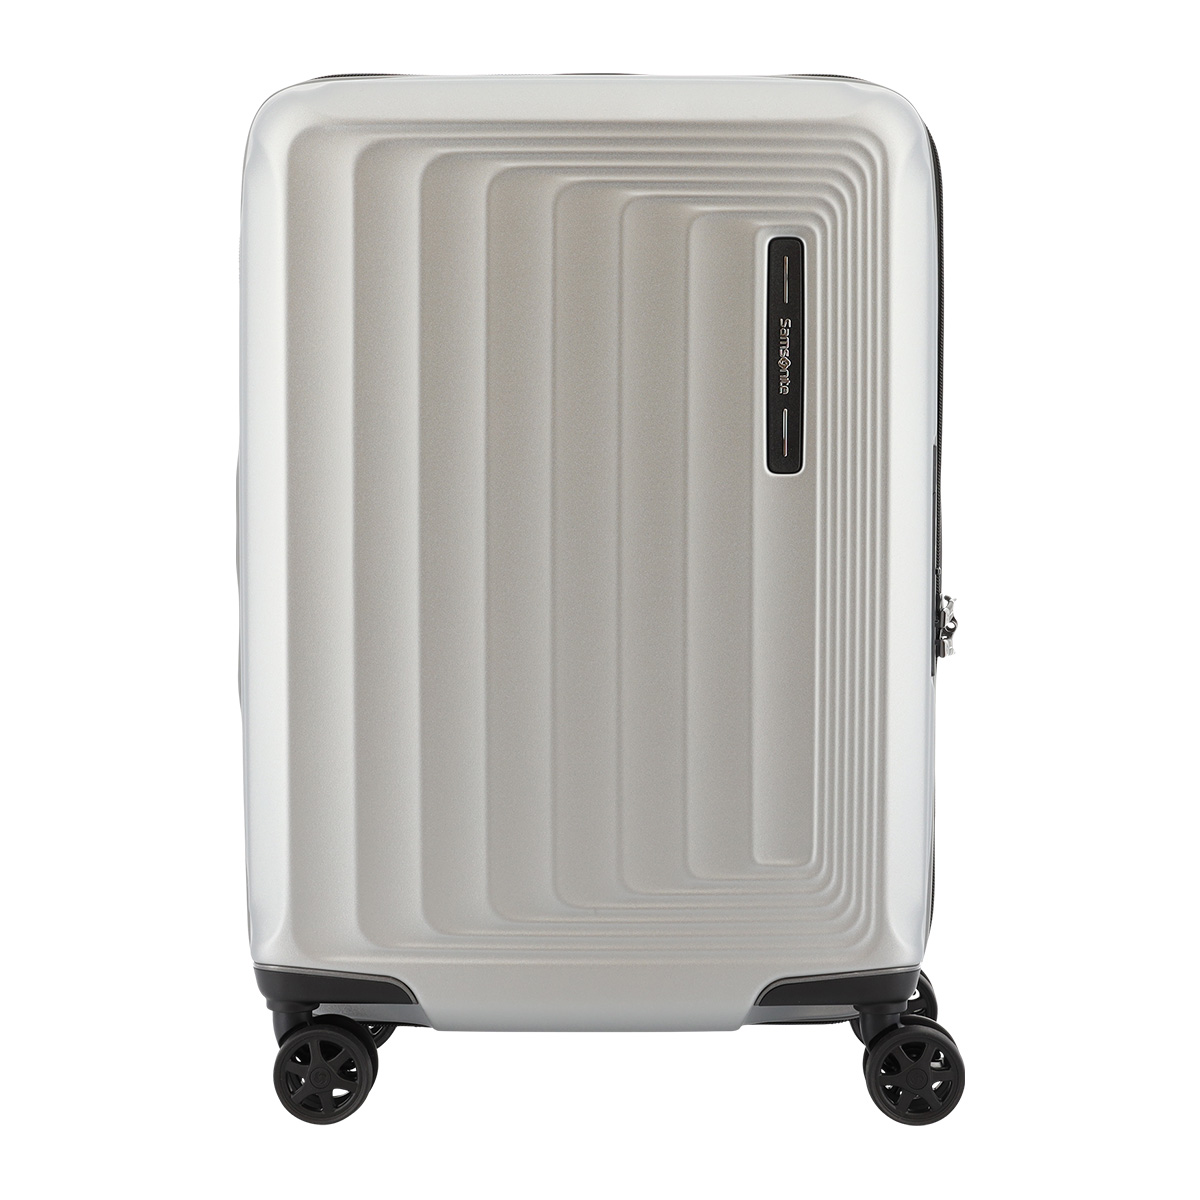 サムソナイト スーツケース ヌオン スピナー 38(42)L 51cm 2.5kg NUON-08002 38002 Samsonite  SPINNER | キャリーケース ハード ファスナー TSAロック 拡張